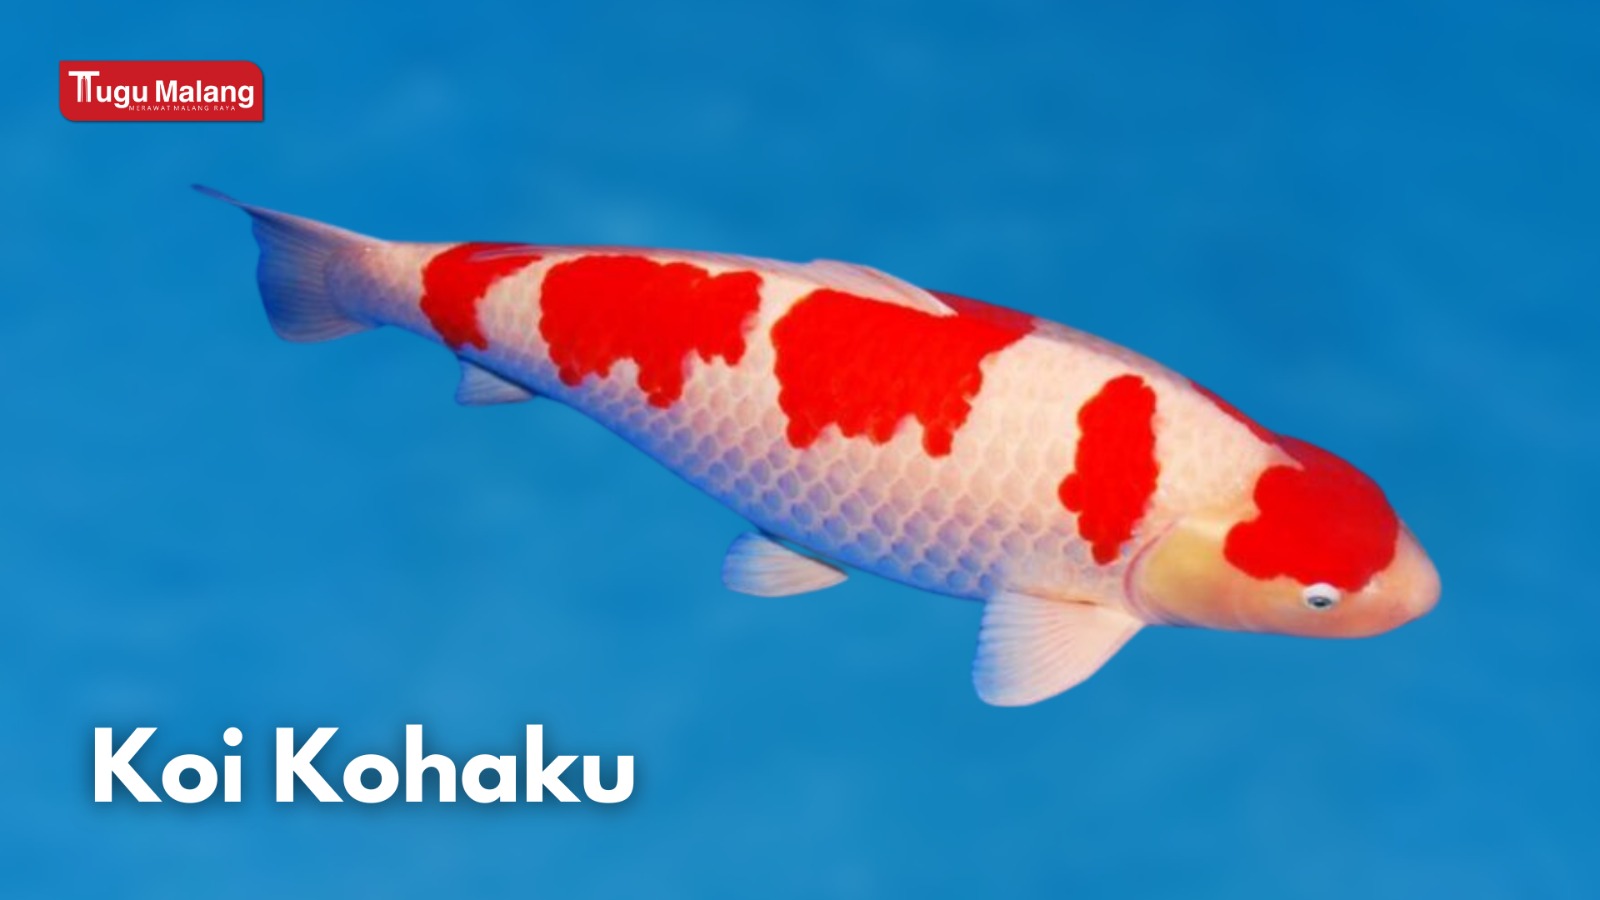 Jenis Ikan Koi Kohaku.